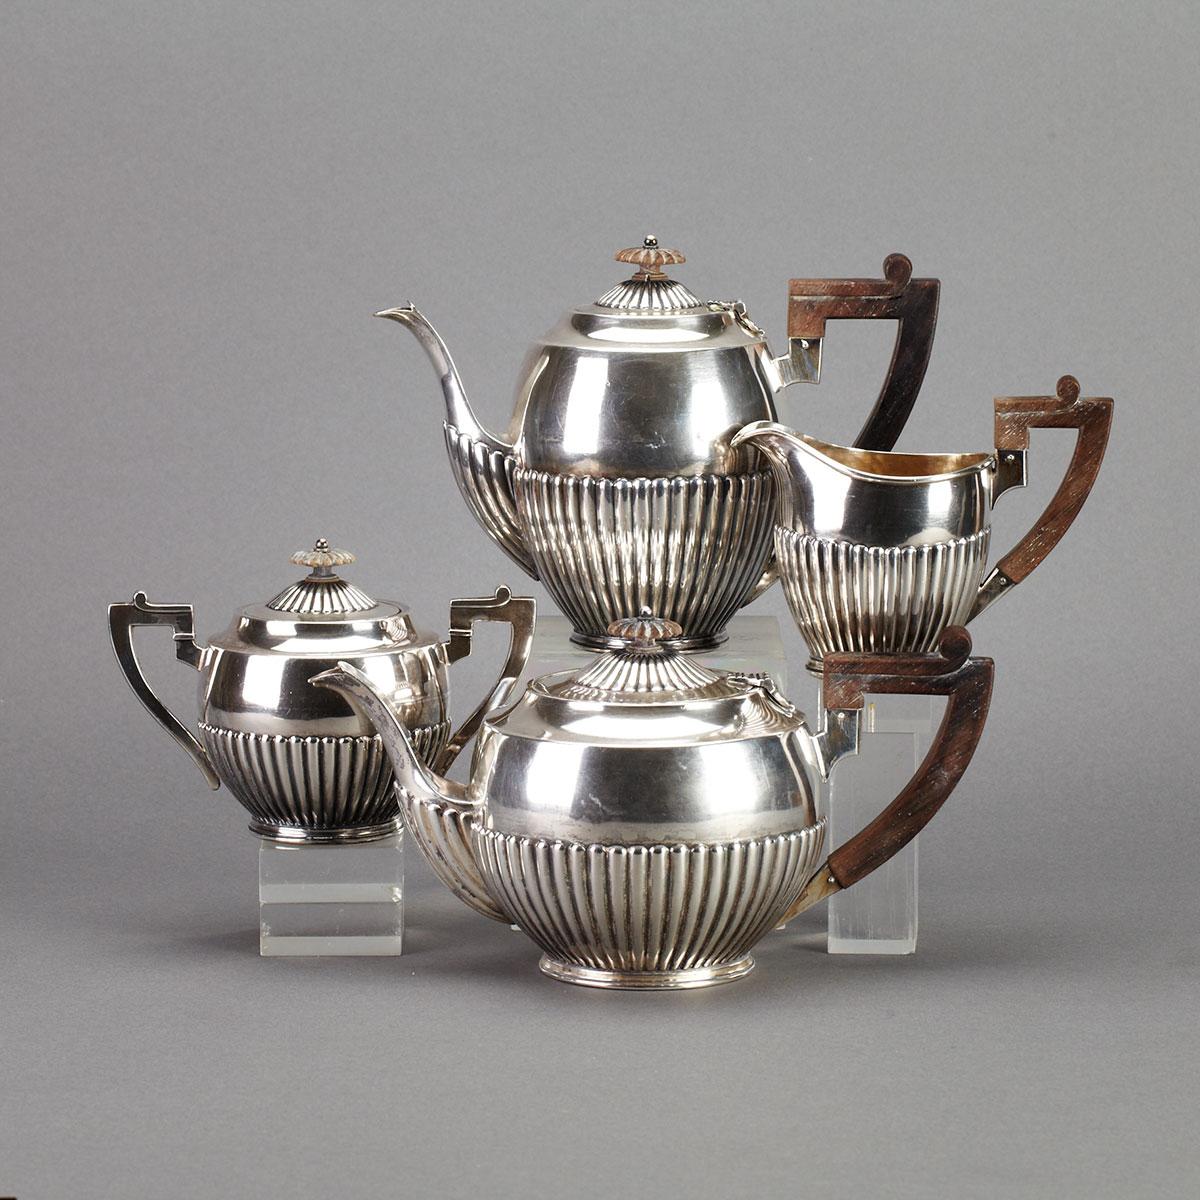 Portuguese Silver Tea and Coffee Service, Oporto, 20th century